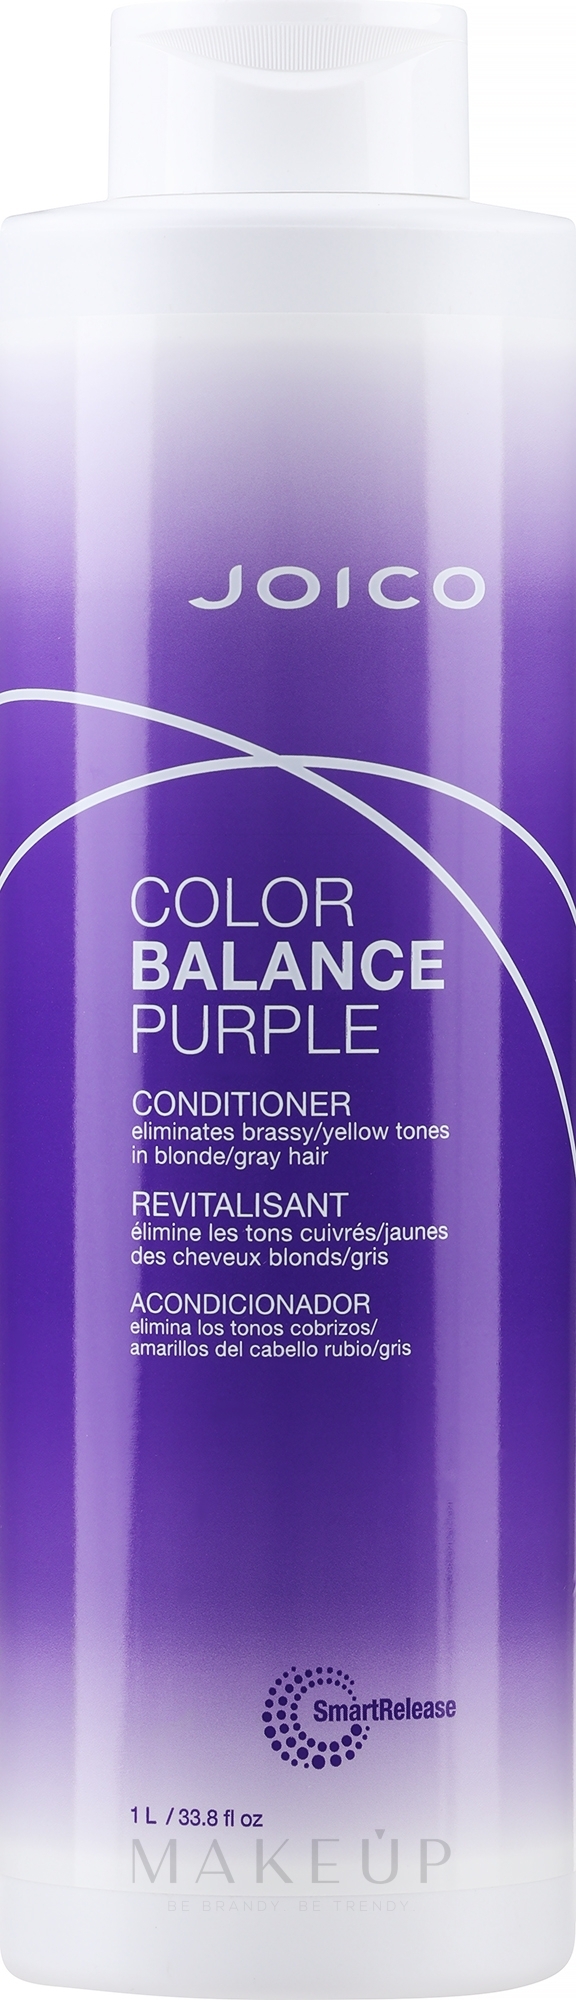 Tönungsconditioner mit violetten Pigmenten für blondes, helles oder graues Haar - Joico Color Balance Purple Conditioner — Bild 1000 ml